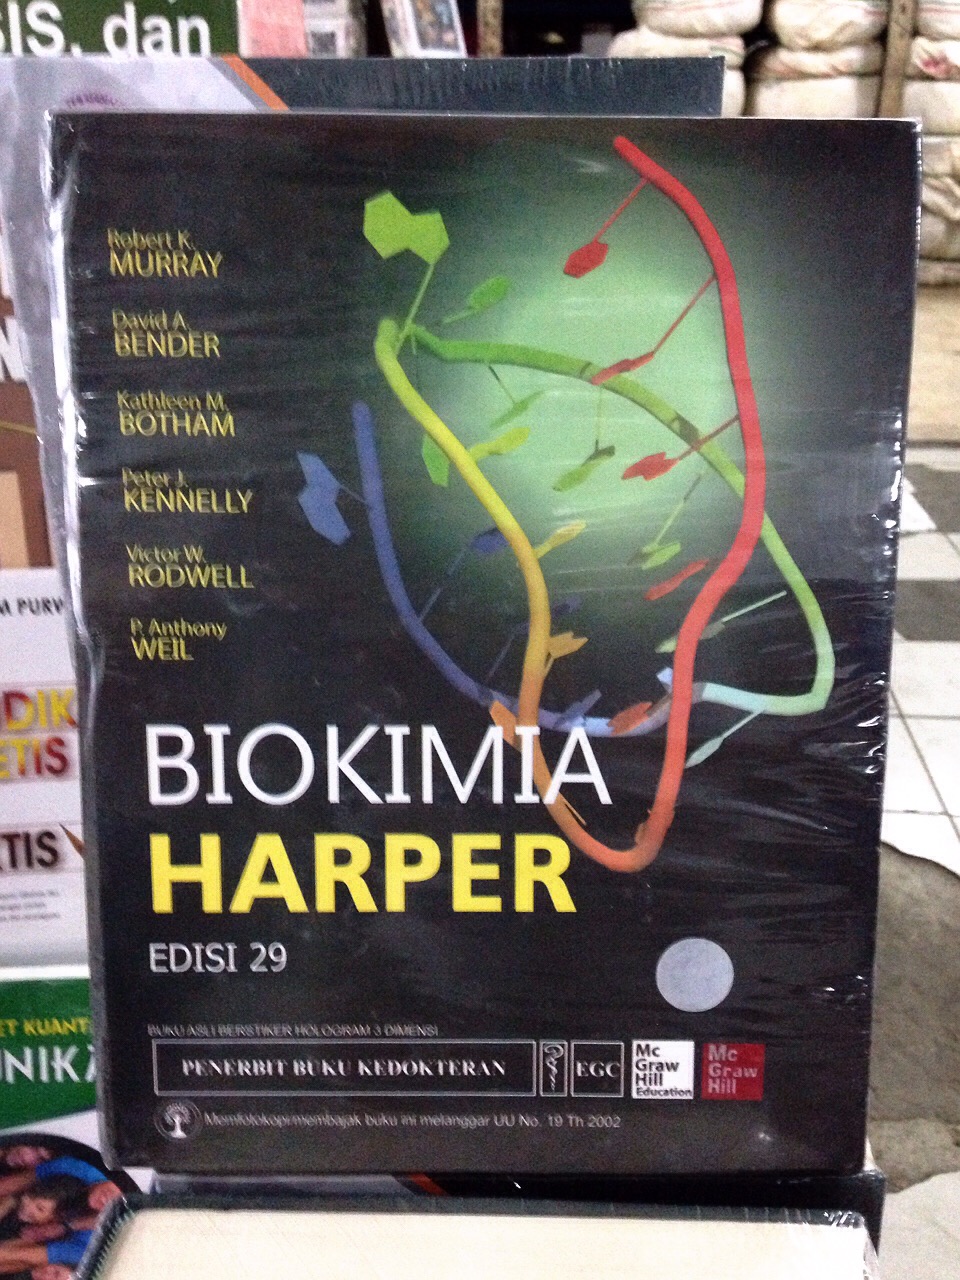 biokimia harper indonesia pdf